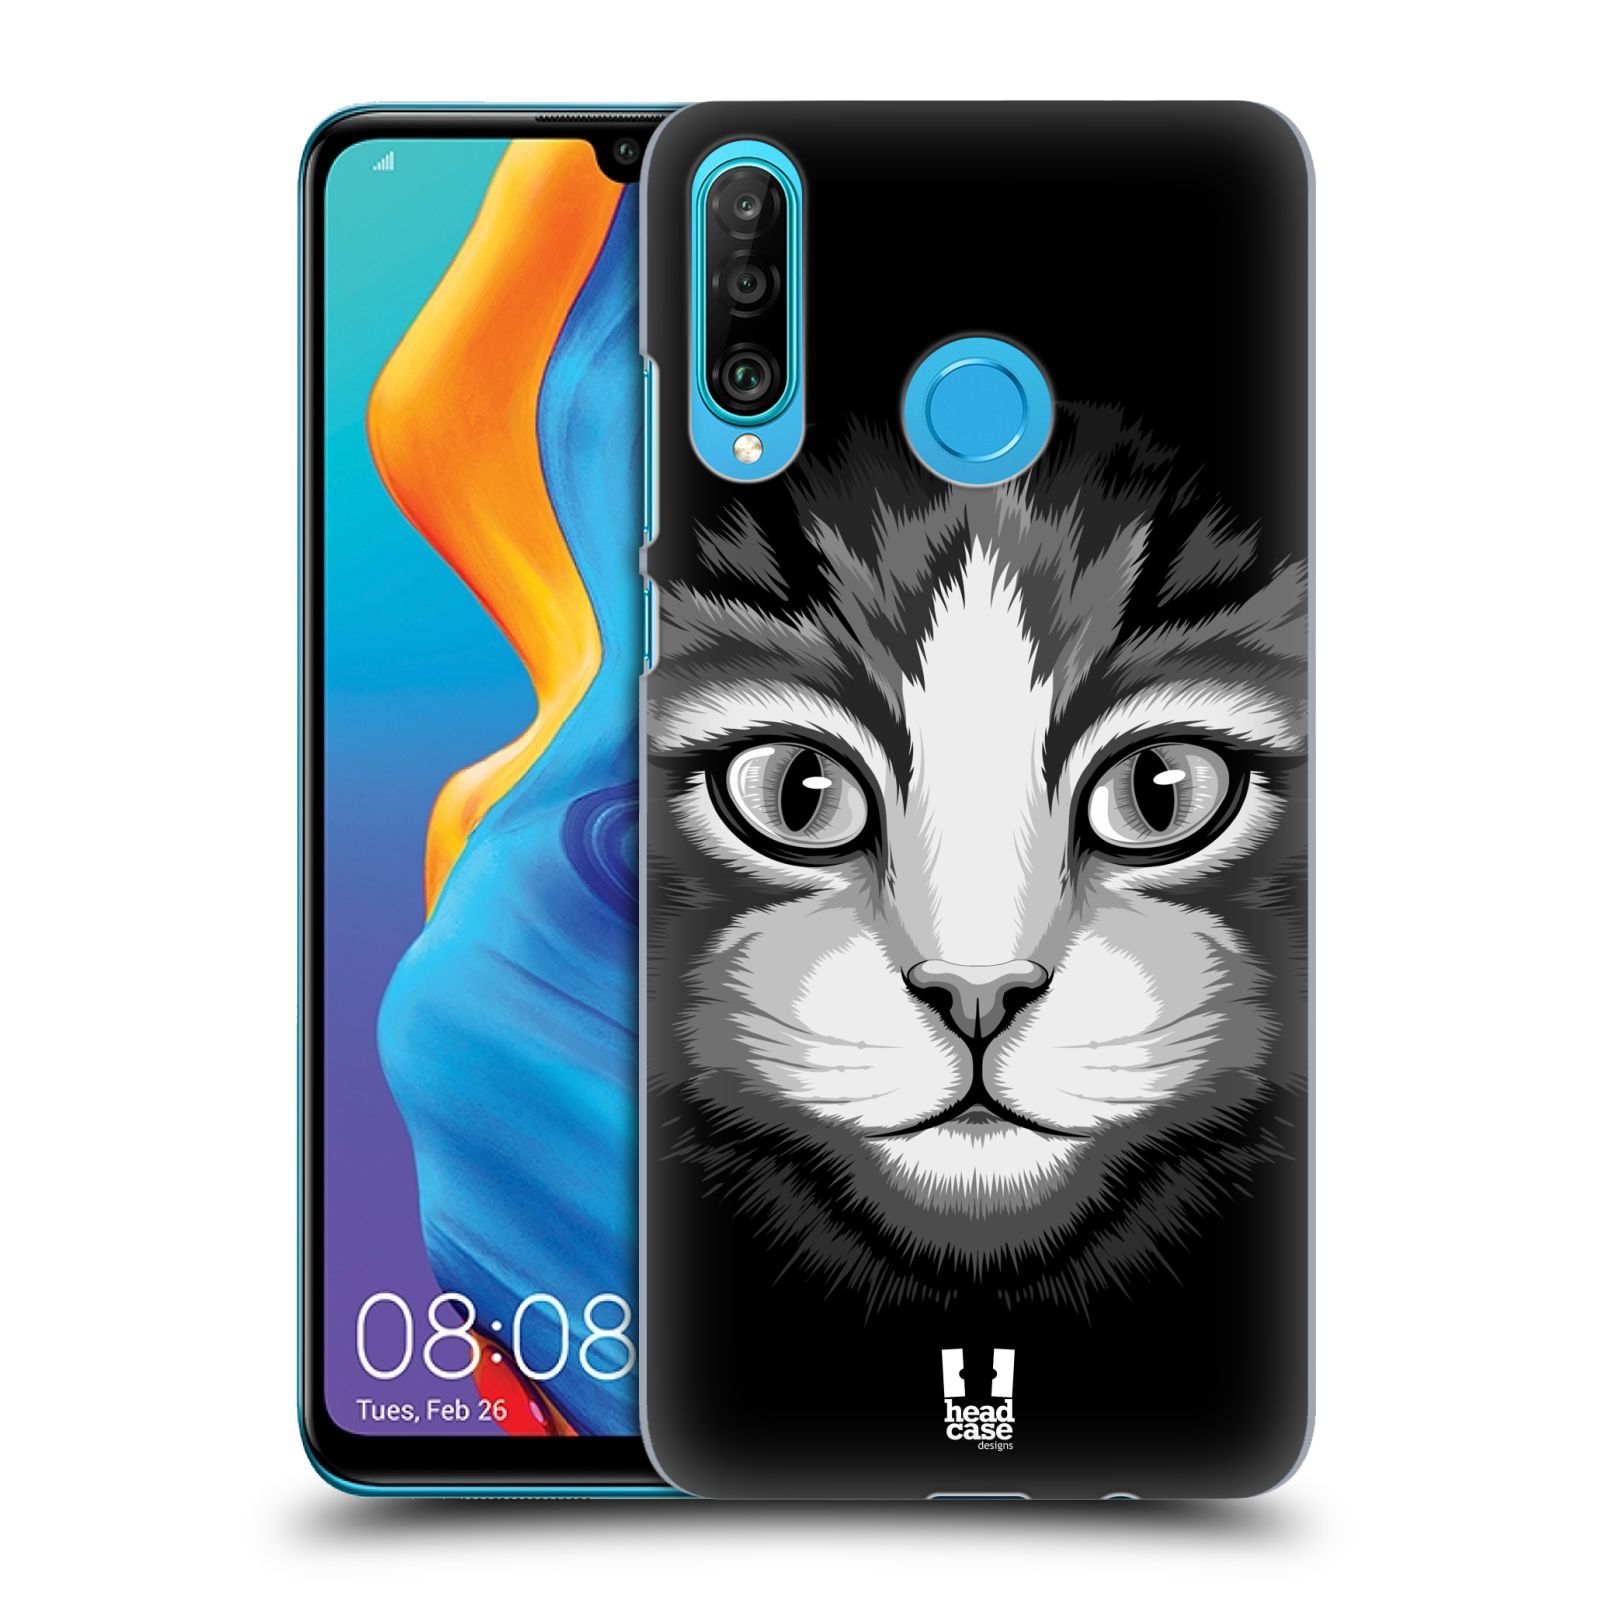 Pouzdro na mobil Huawei P30 LITE - HEAD CASE - vzor Zvíře kreslená tvář 2 kočička